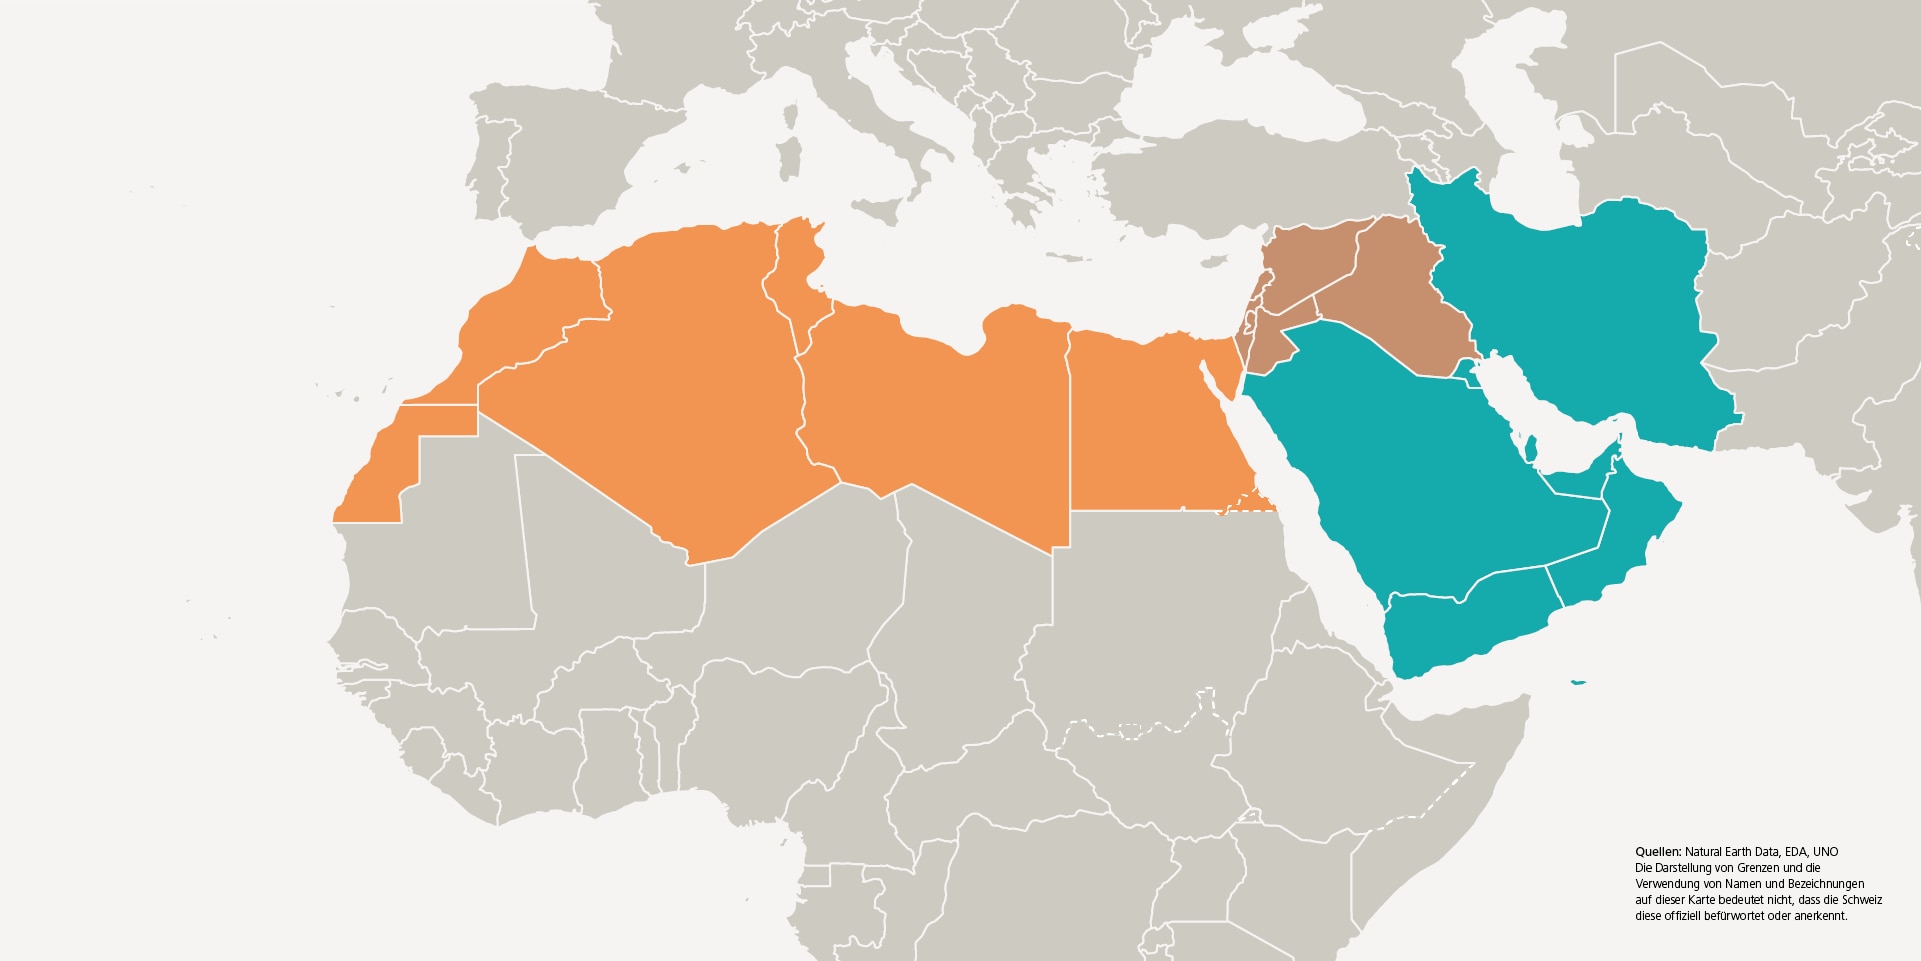  Eine Grafik zeigt die drei Unterregionen Nordafrika, Naher Osten und Arabische Halbinsel und Iran.